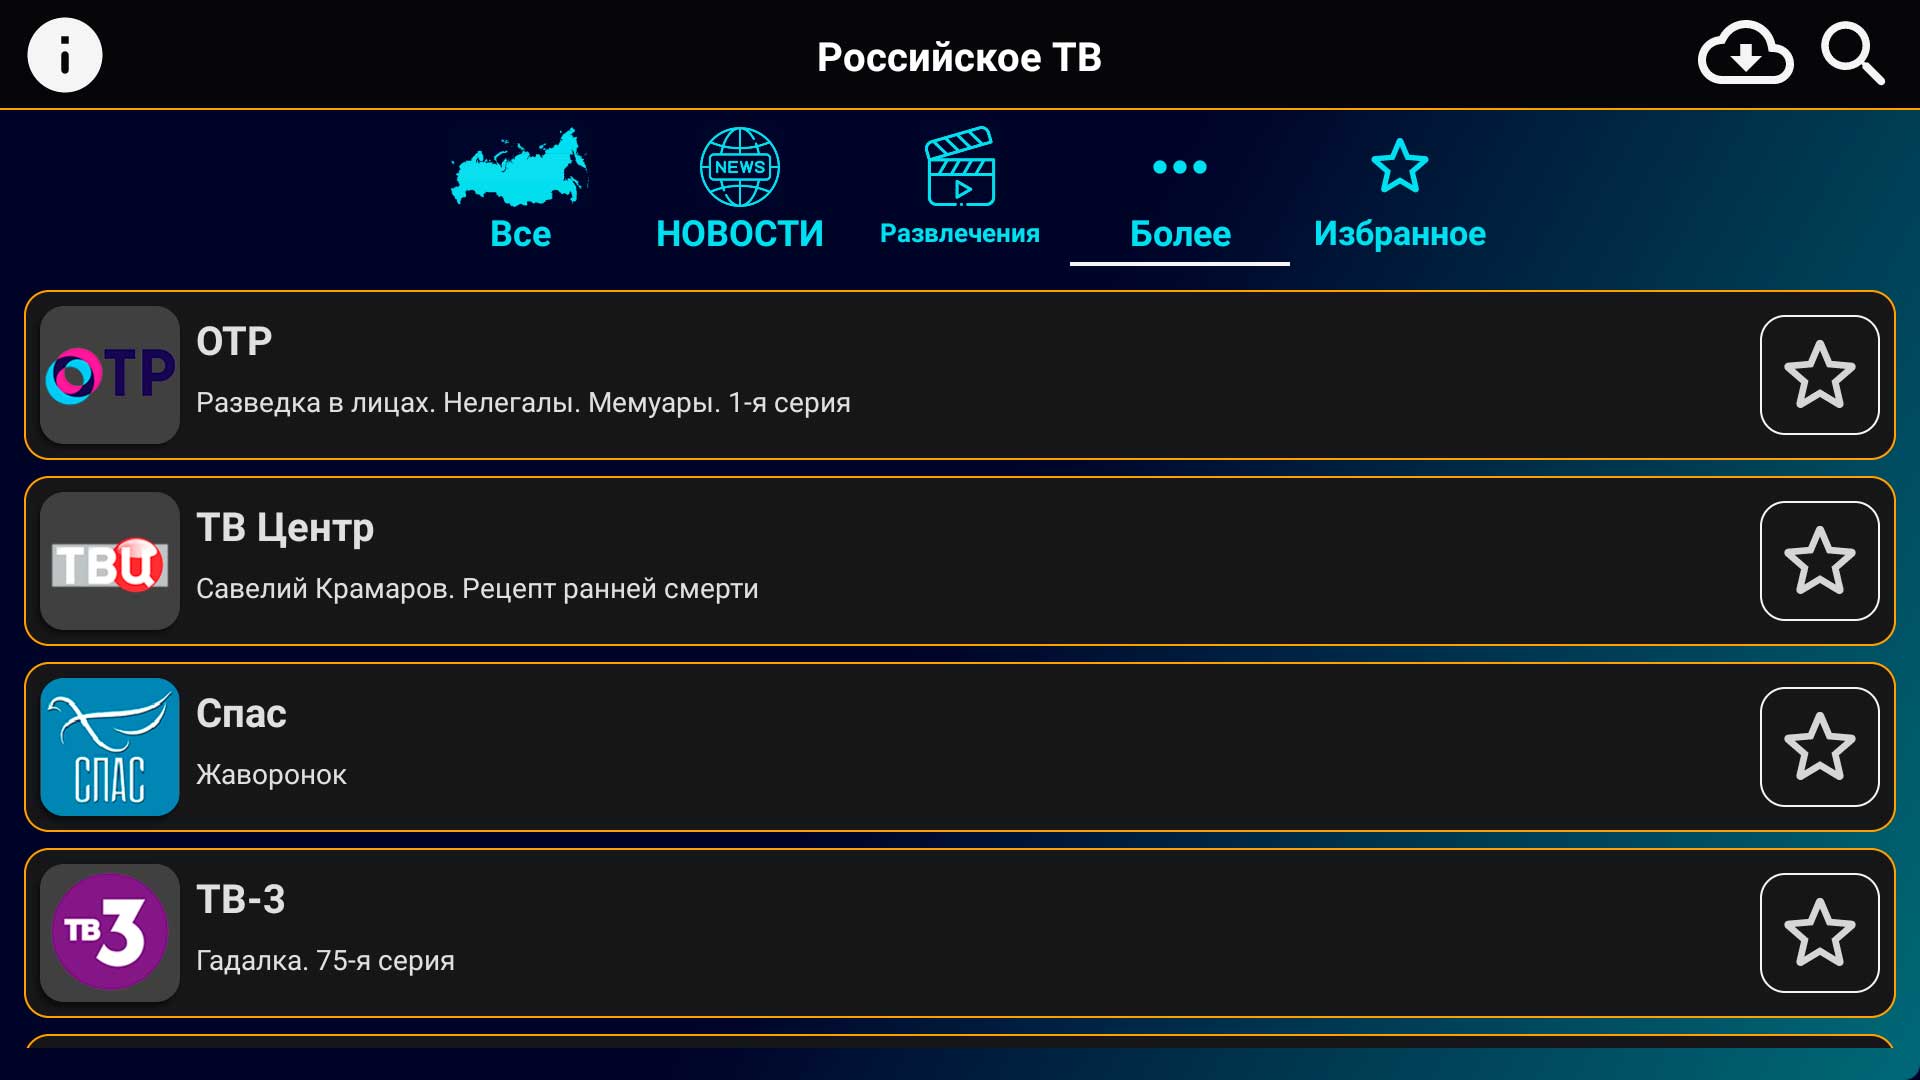 Российское ТВ APK. Русское ТВ Android. Андроид инфо.